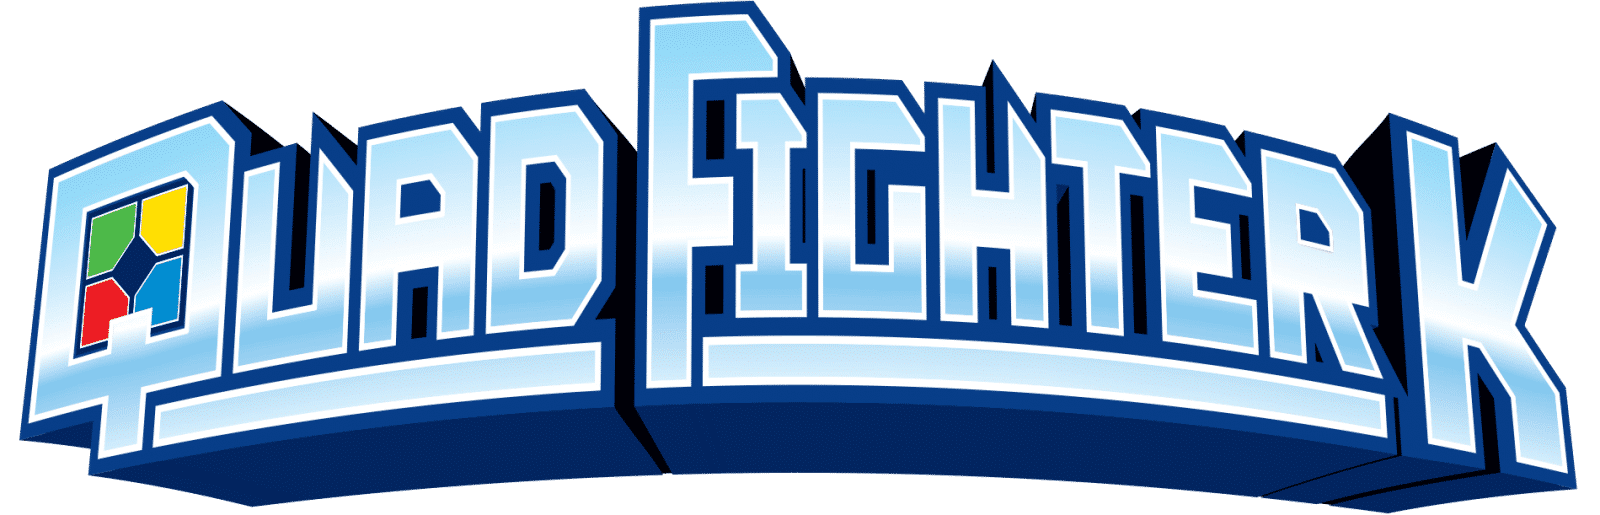 Quad Fighter K: Retro Coop Shooter für Nintendo Switch angekündigt